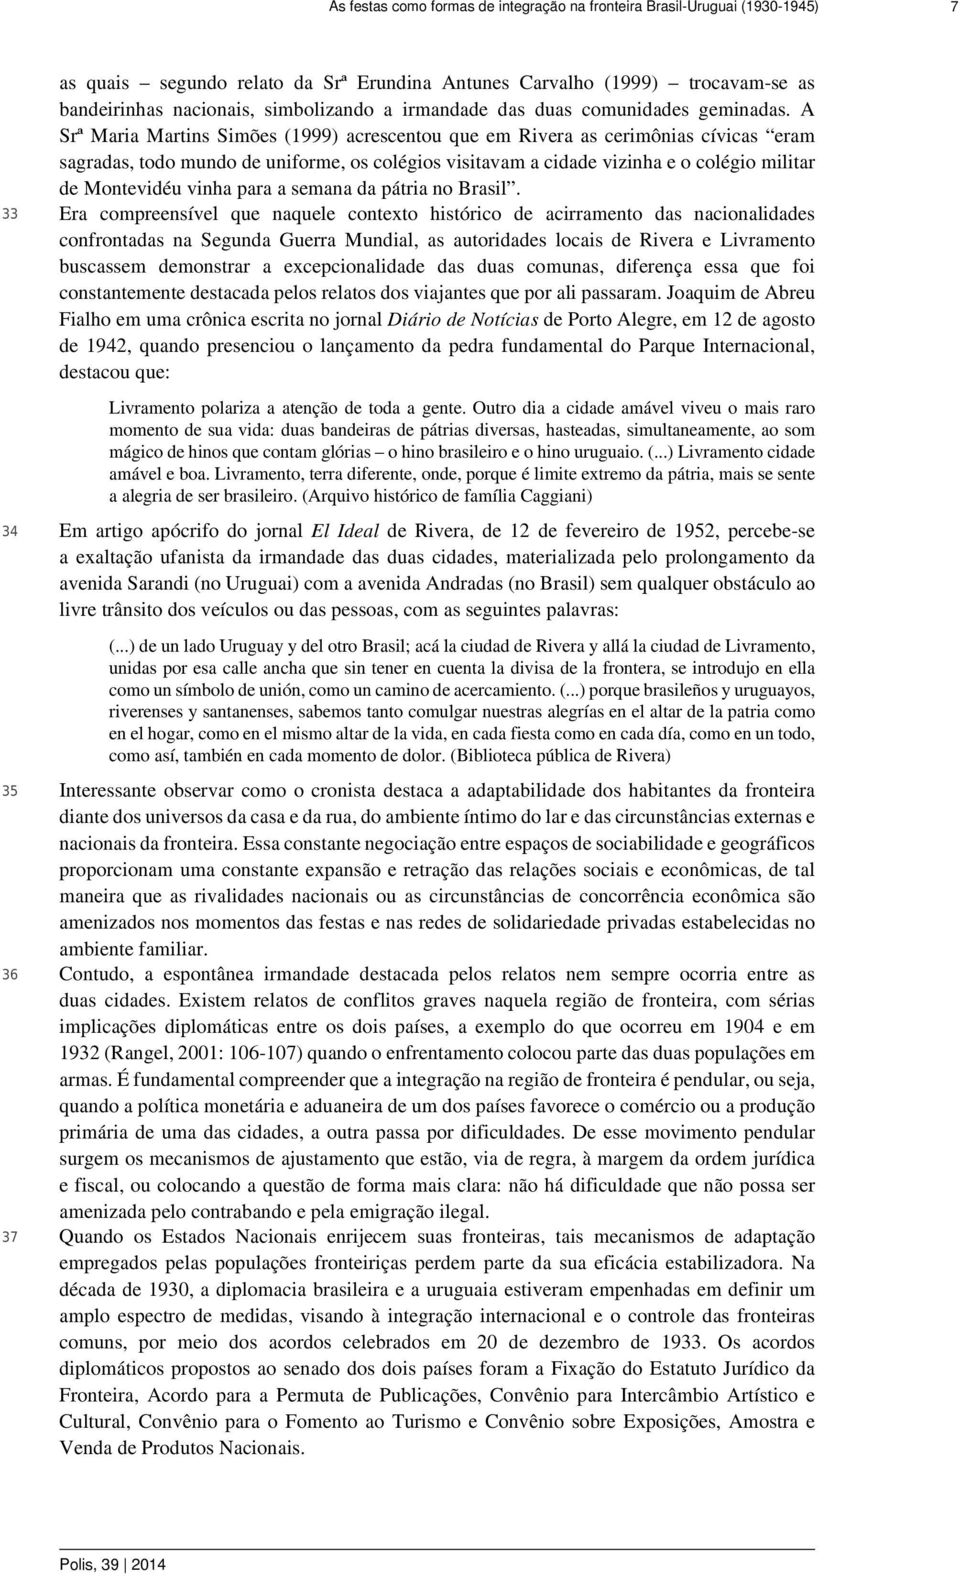 A Srª Maria Martins Simões (1999) acrescentou que em Rivera as cerimônias cívicas eram sagradas, todo mundo de uniforme, os colégios visitavam a cidade vizinha e o colégio militar de Montevidéu vinha